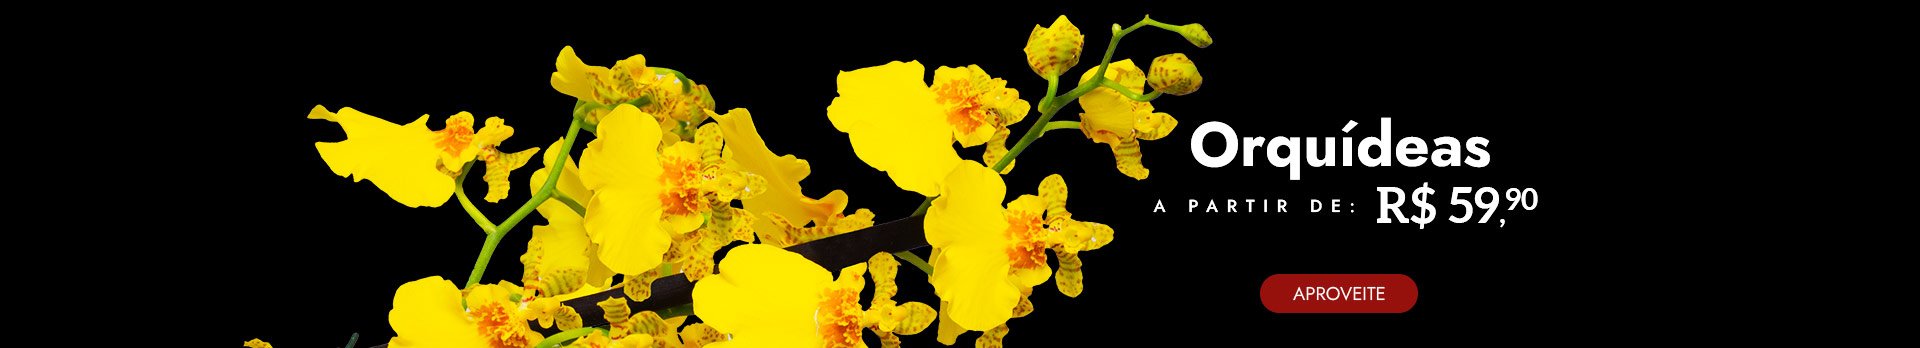 Orquídeas a partir de R$59,90 Off  - Super